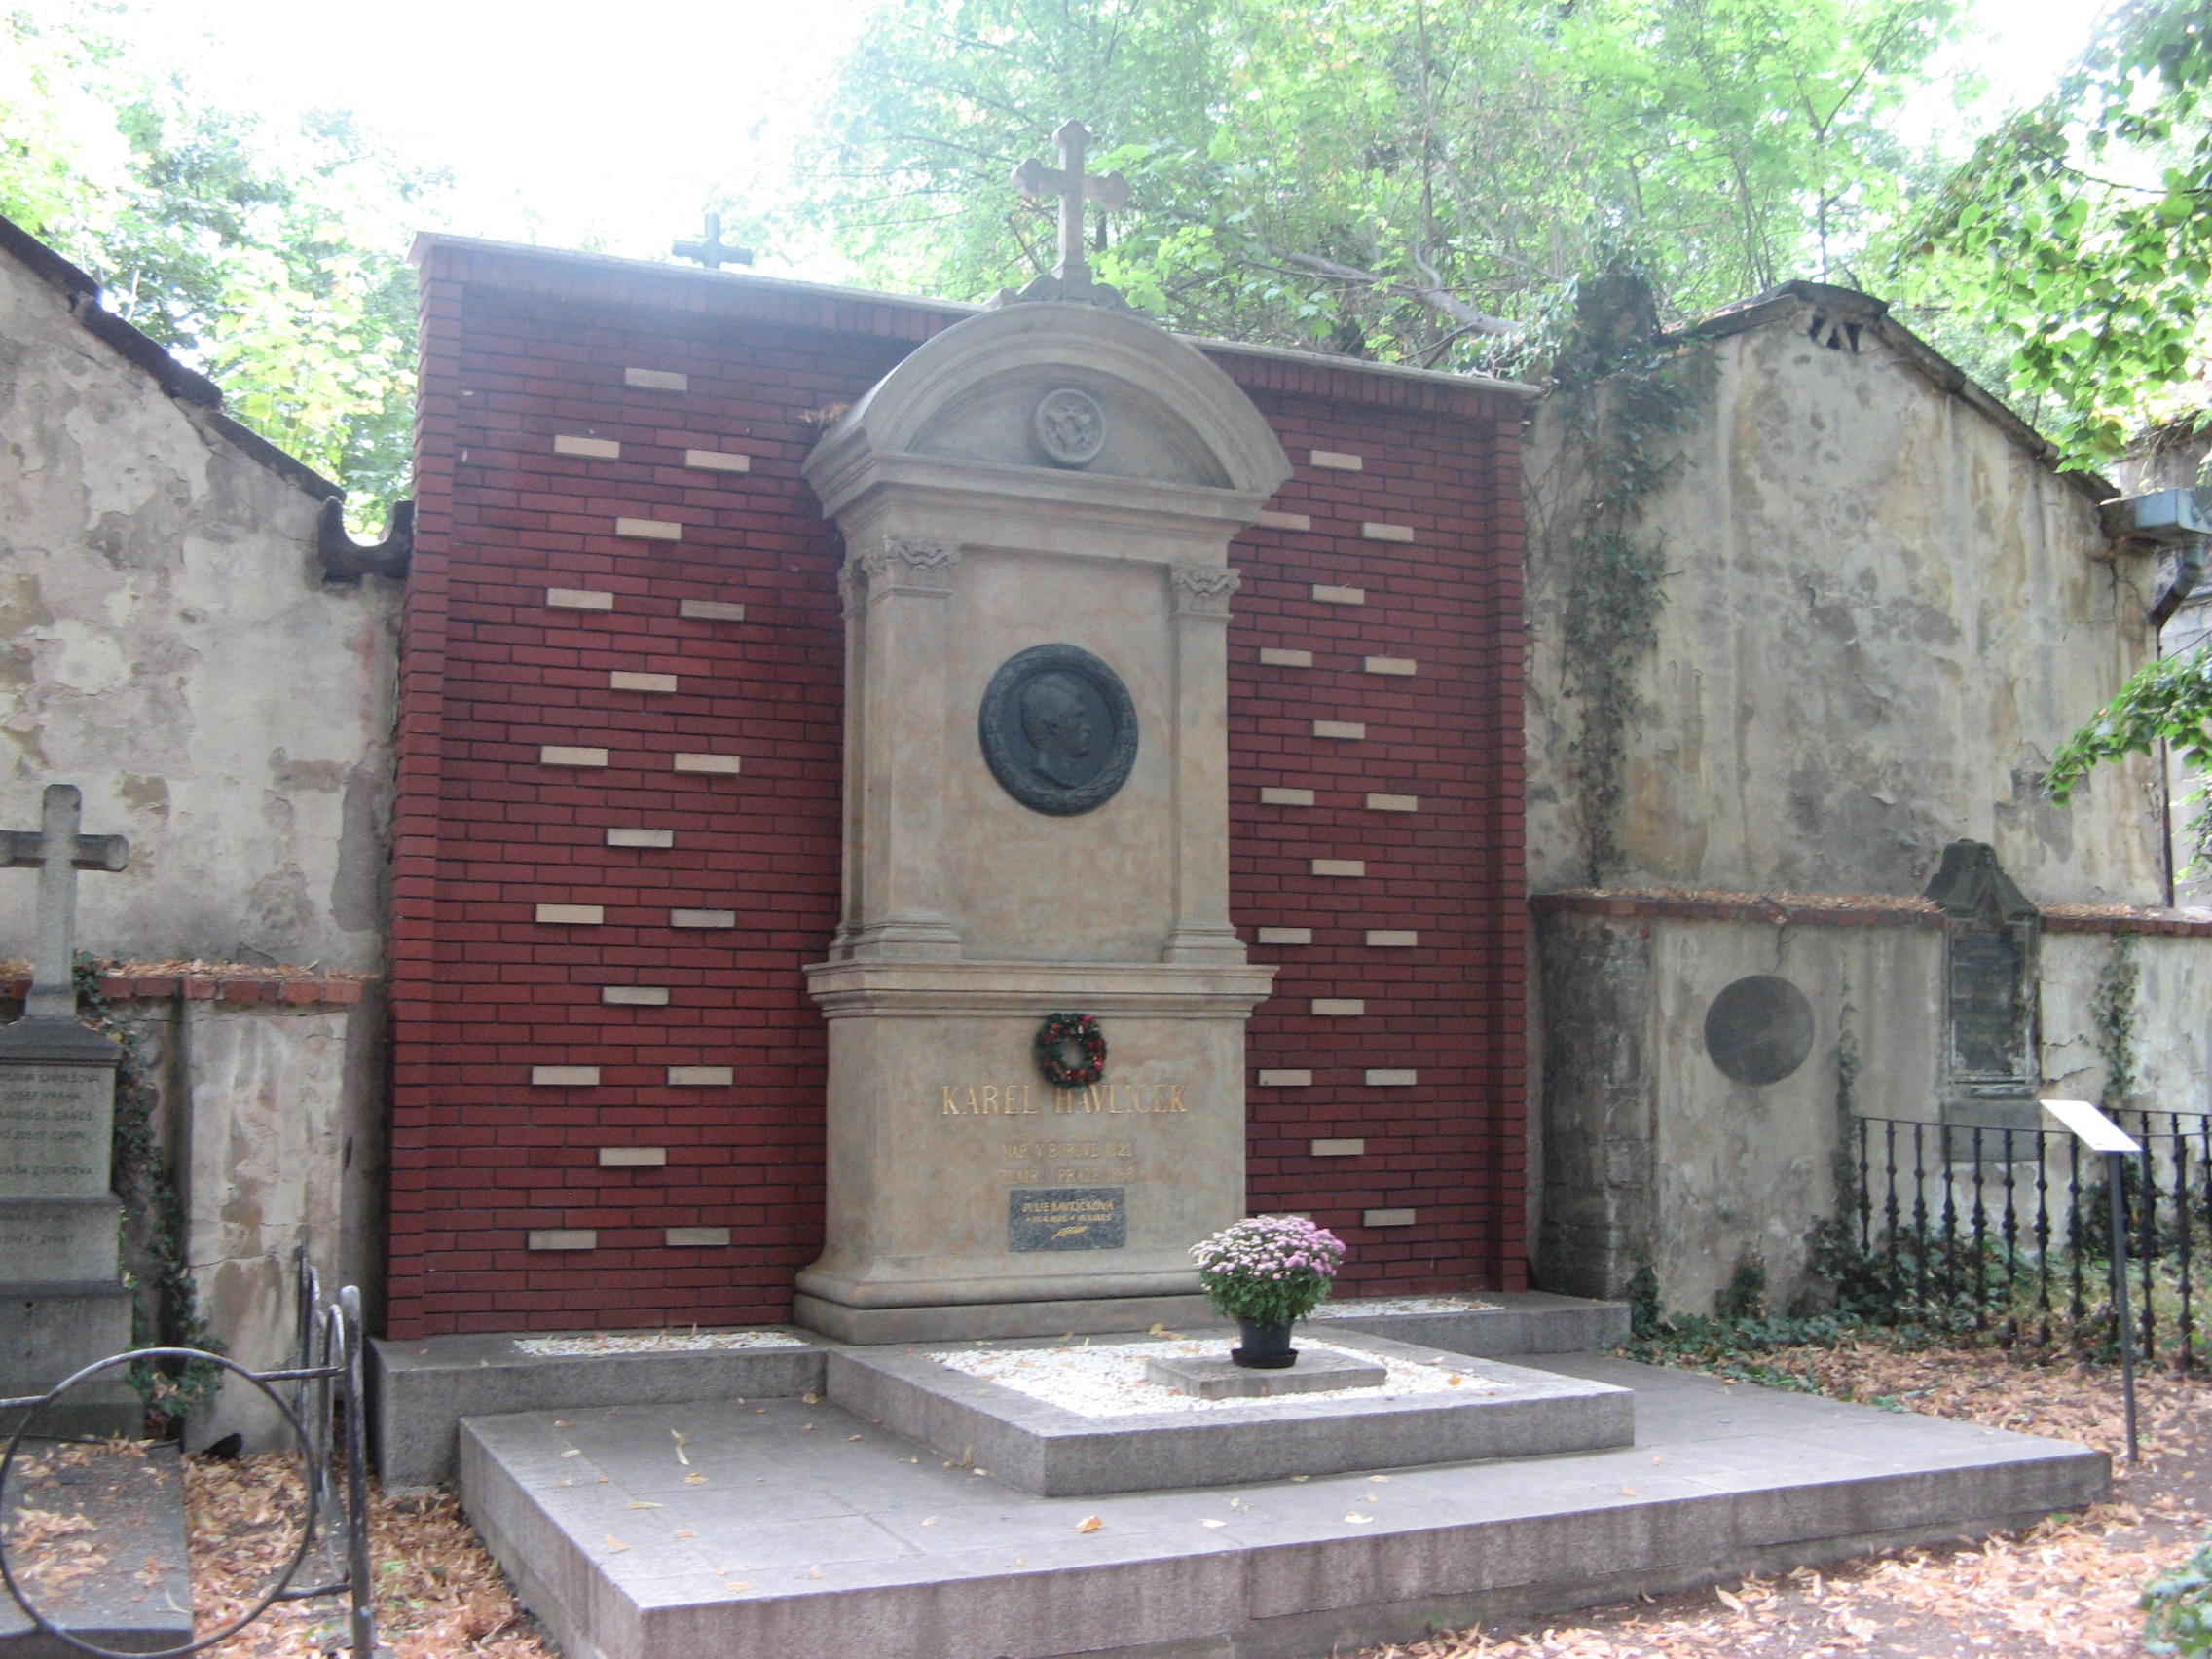 Spisovatelé Olšanských hřbitovů